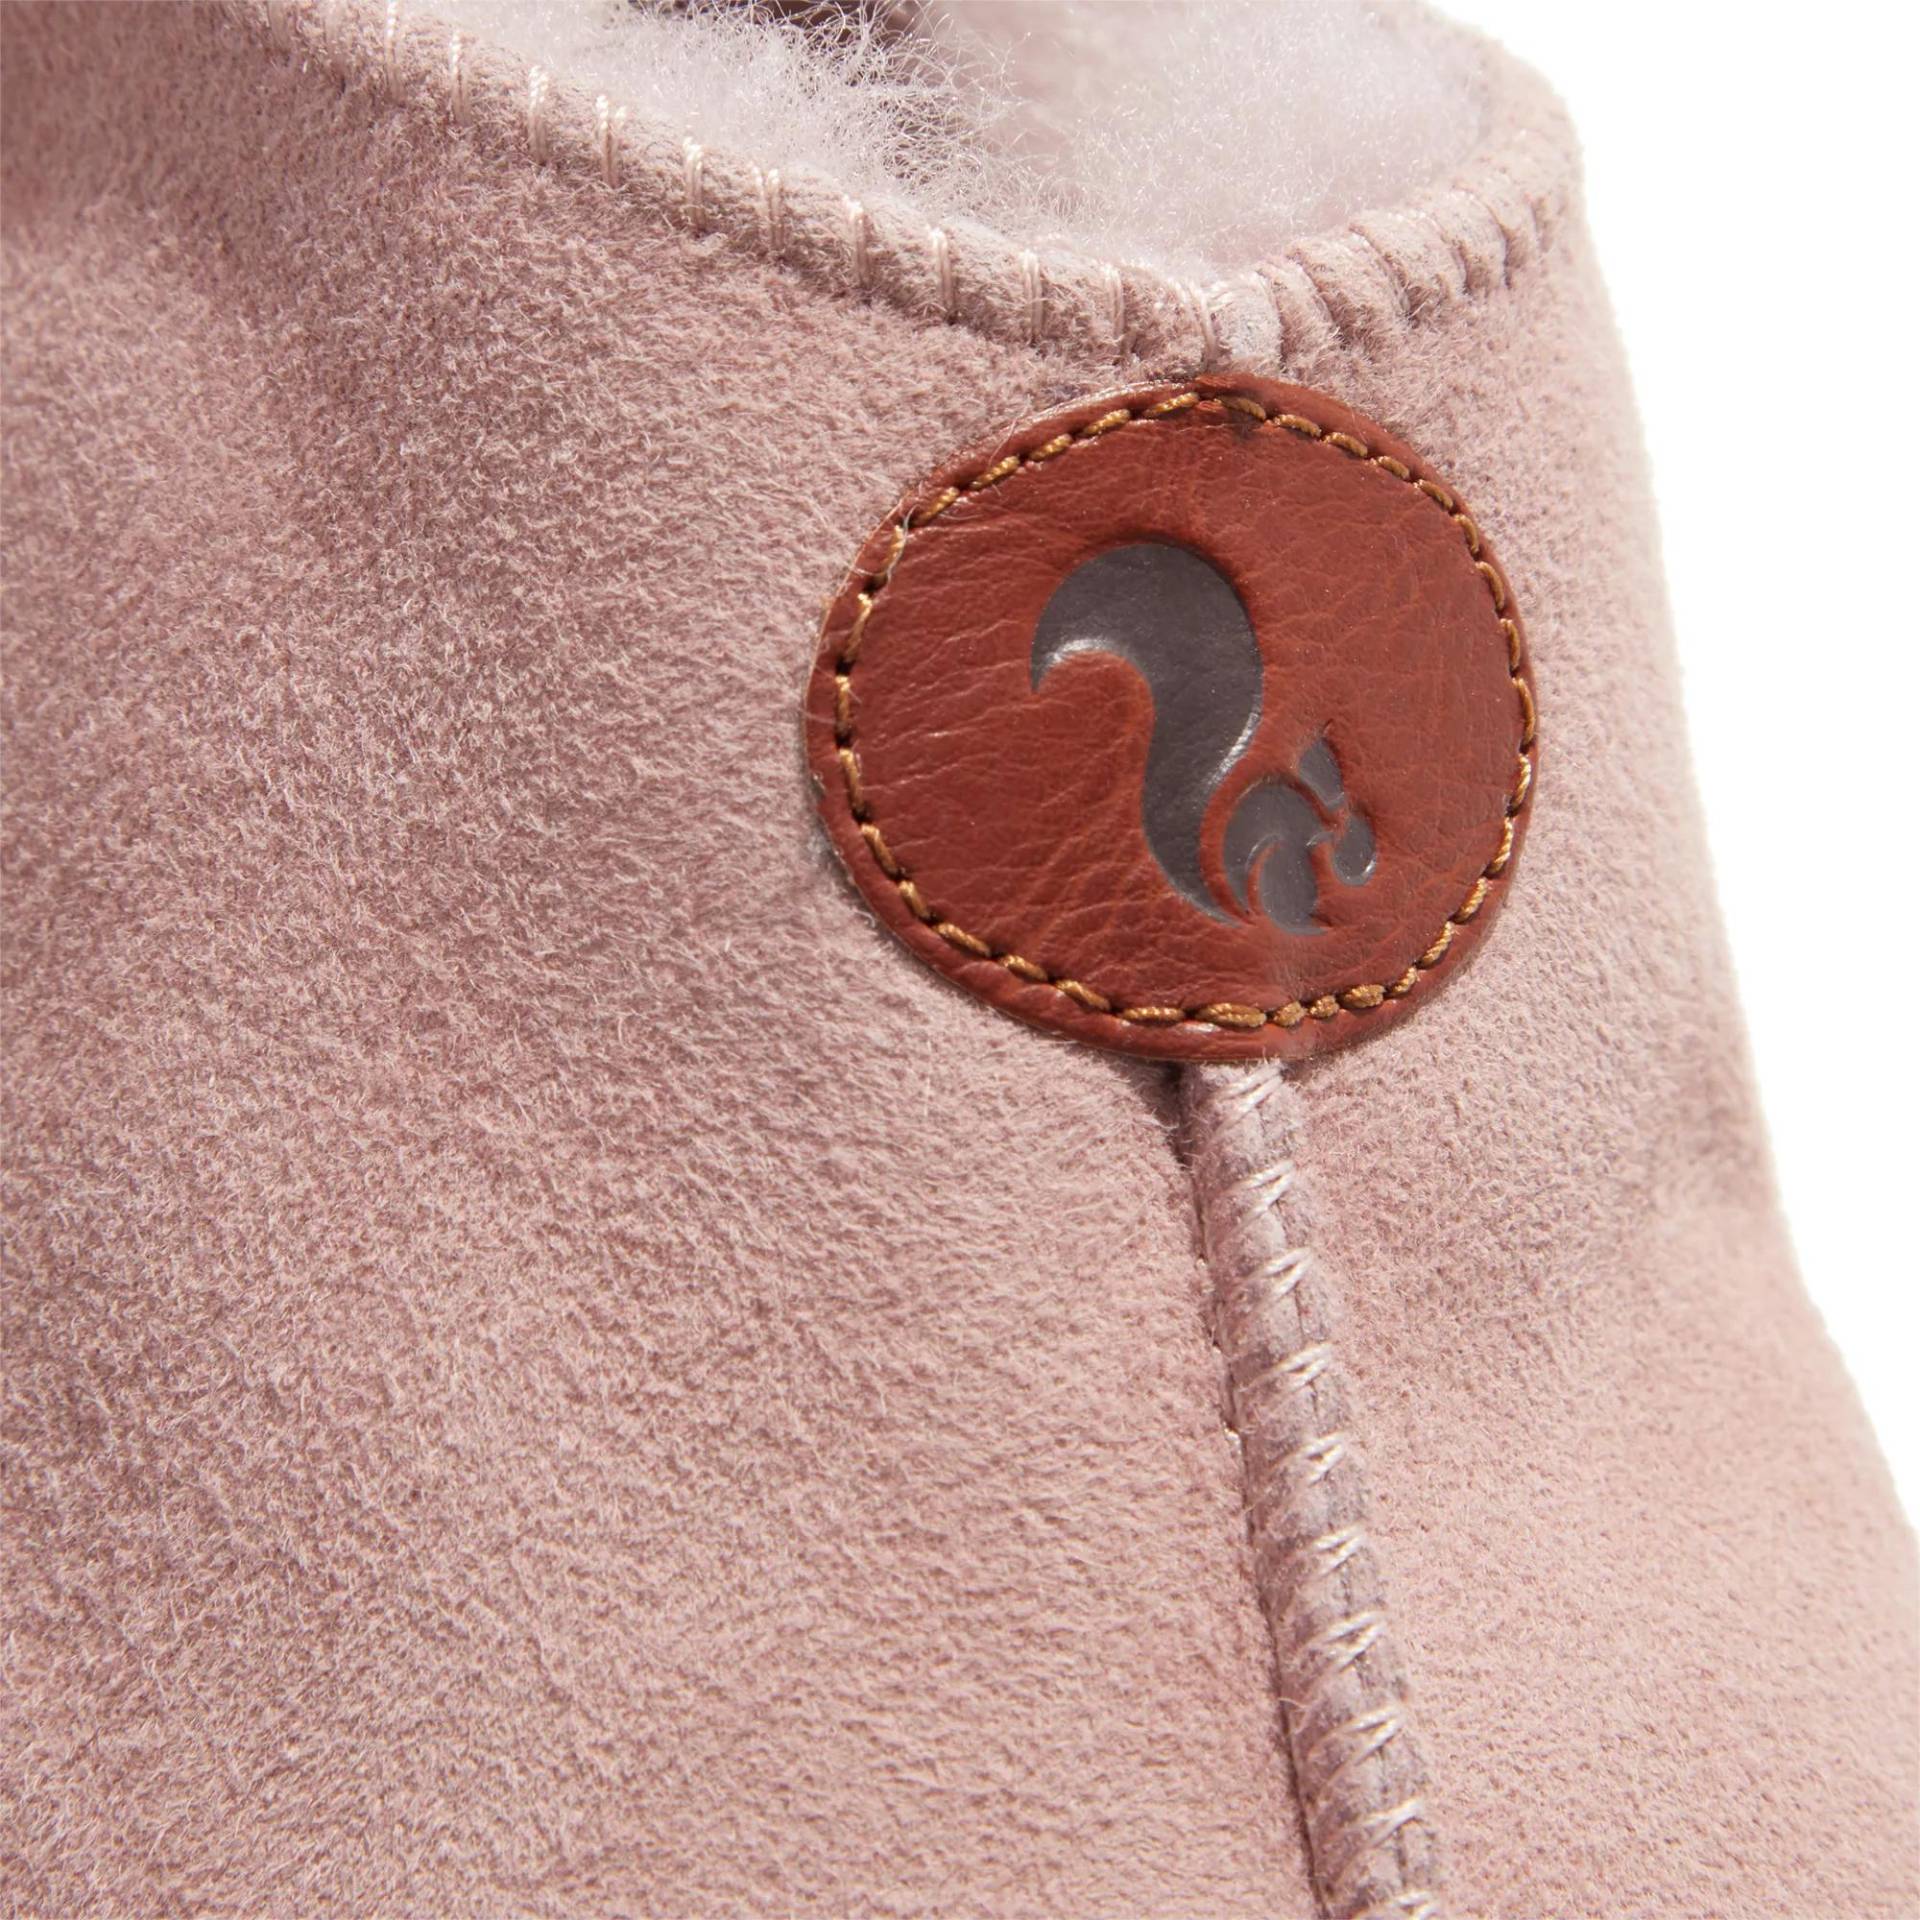 thies Sneakers - thies 1856 ® Sheep Slipper Boot new pink (W) - Gr. 37 (EU) - in Gold - für Damen von thies